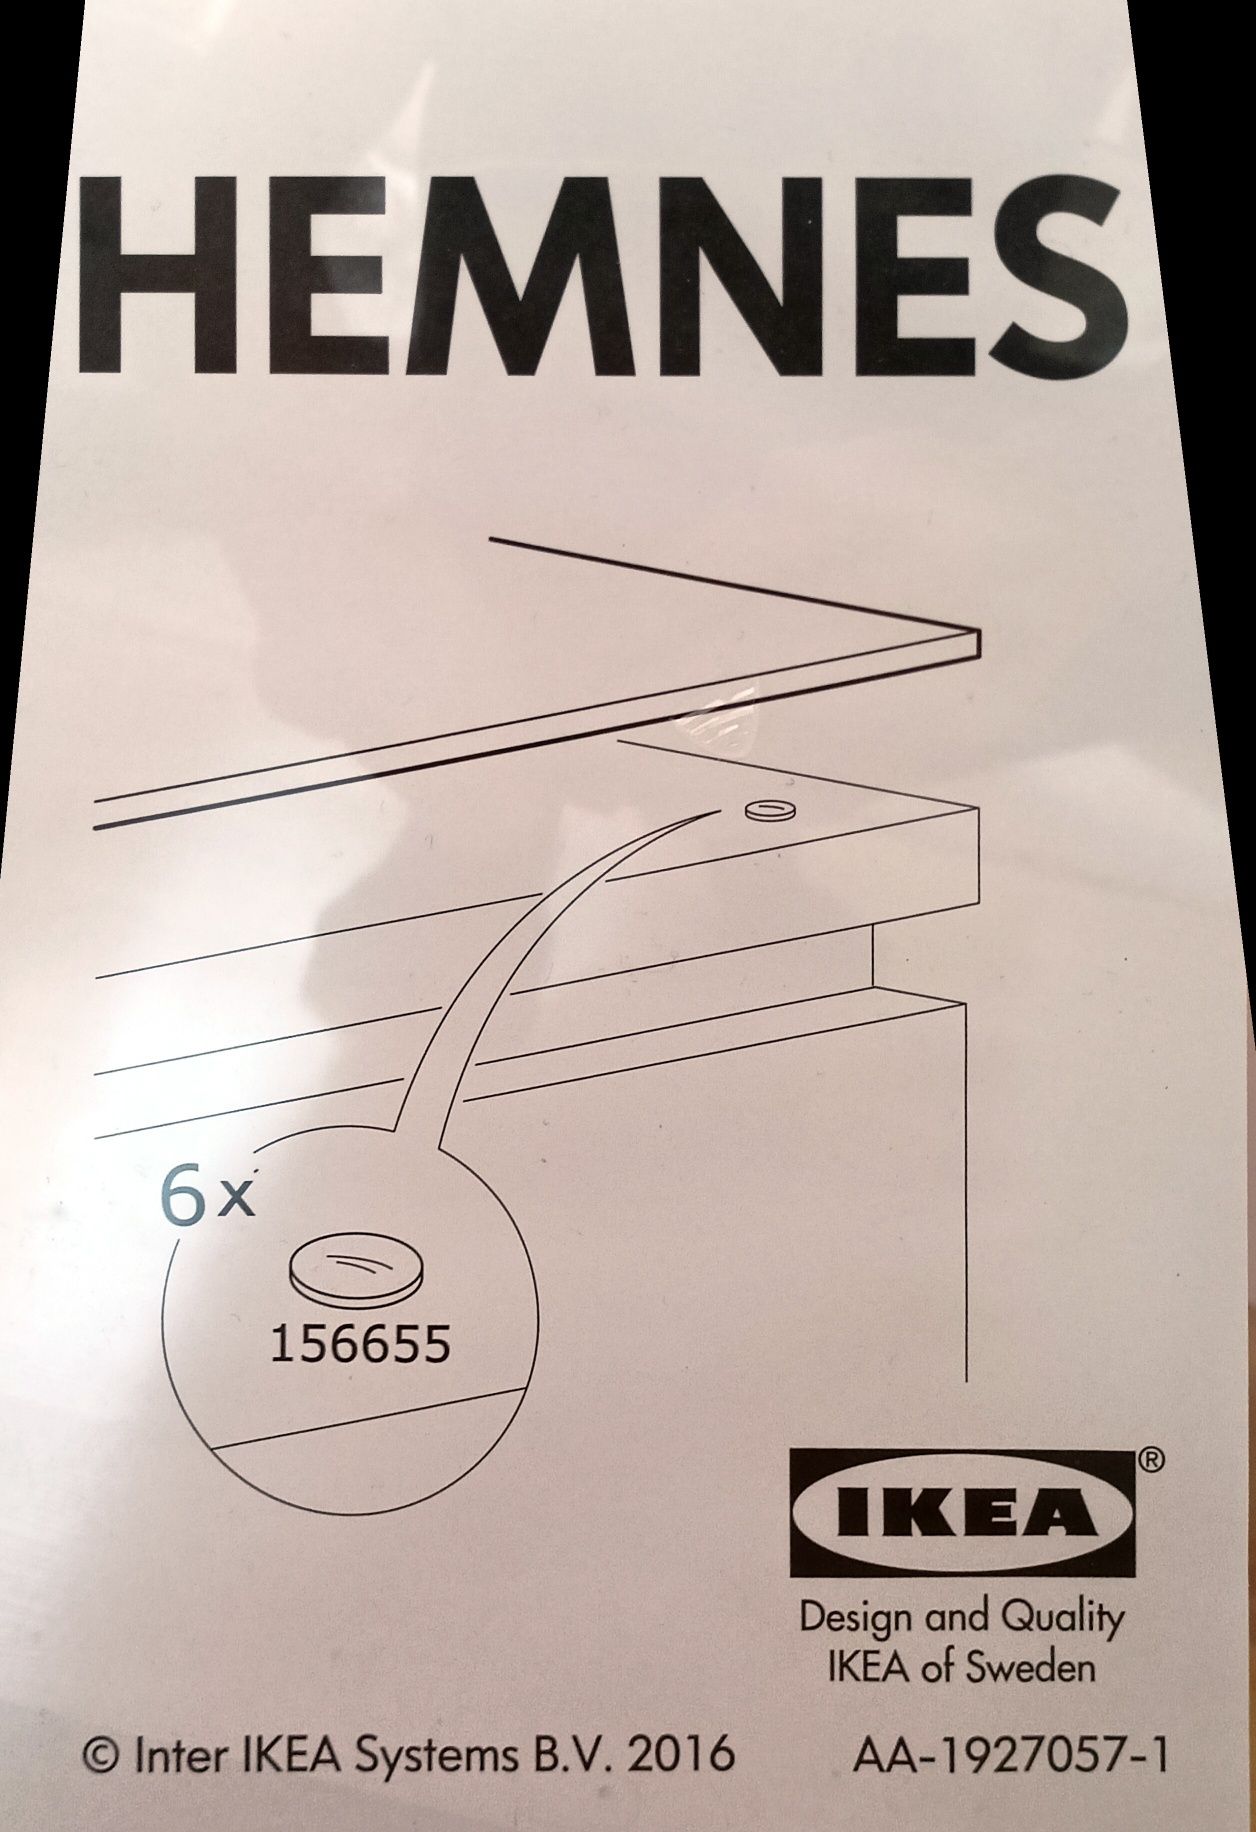 Szklany blat Hemnes Ikea, szyba, półka szklana.